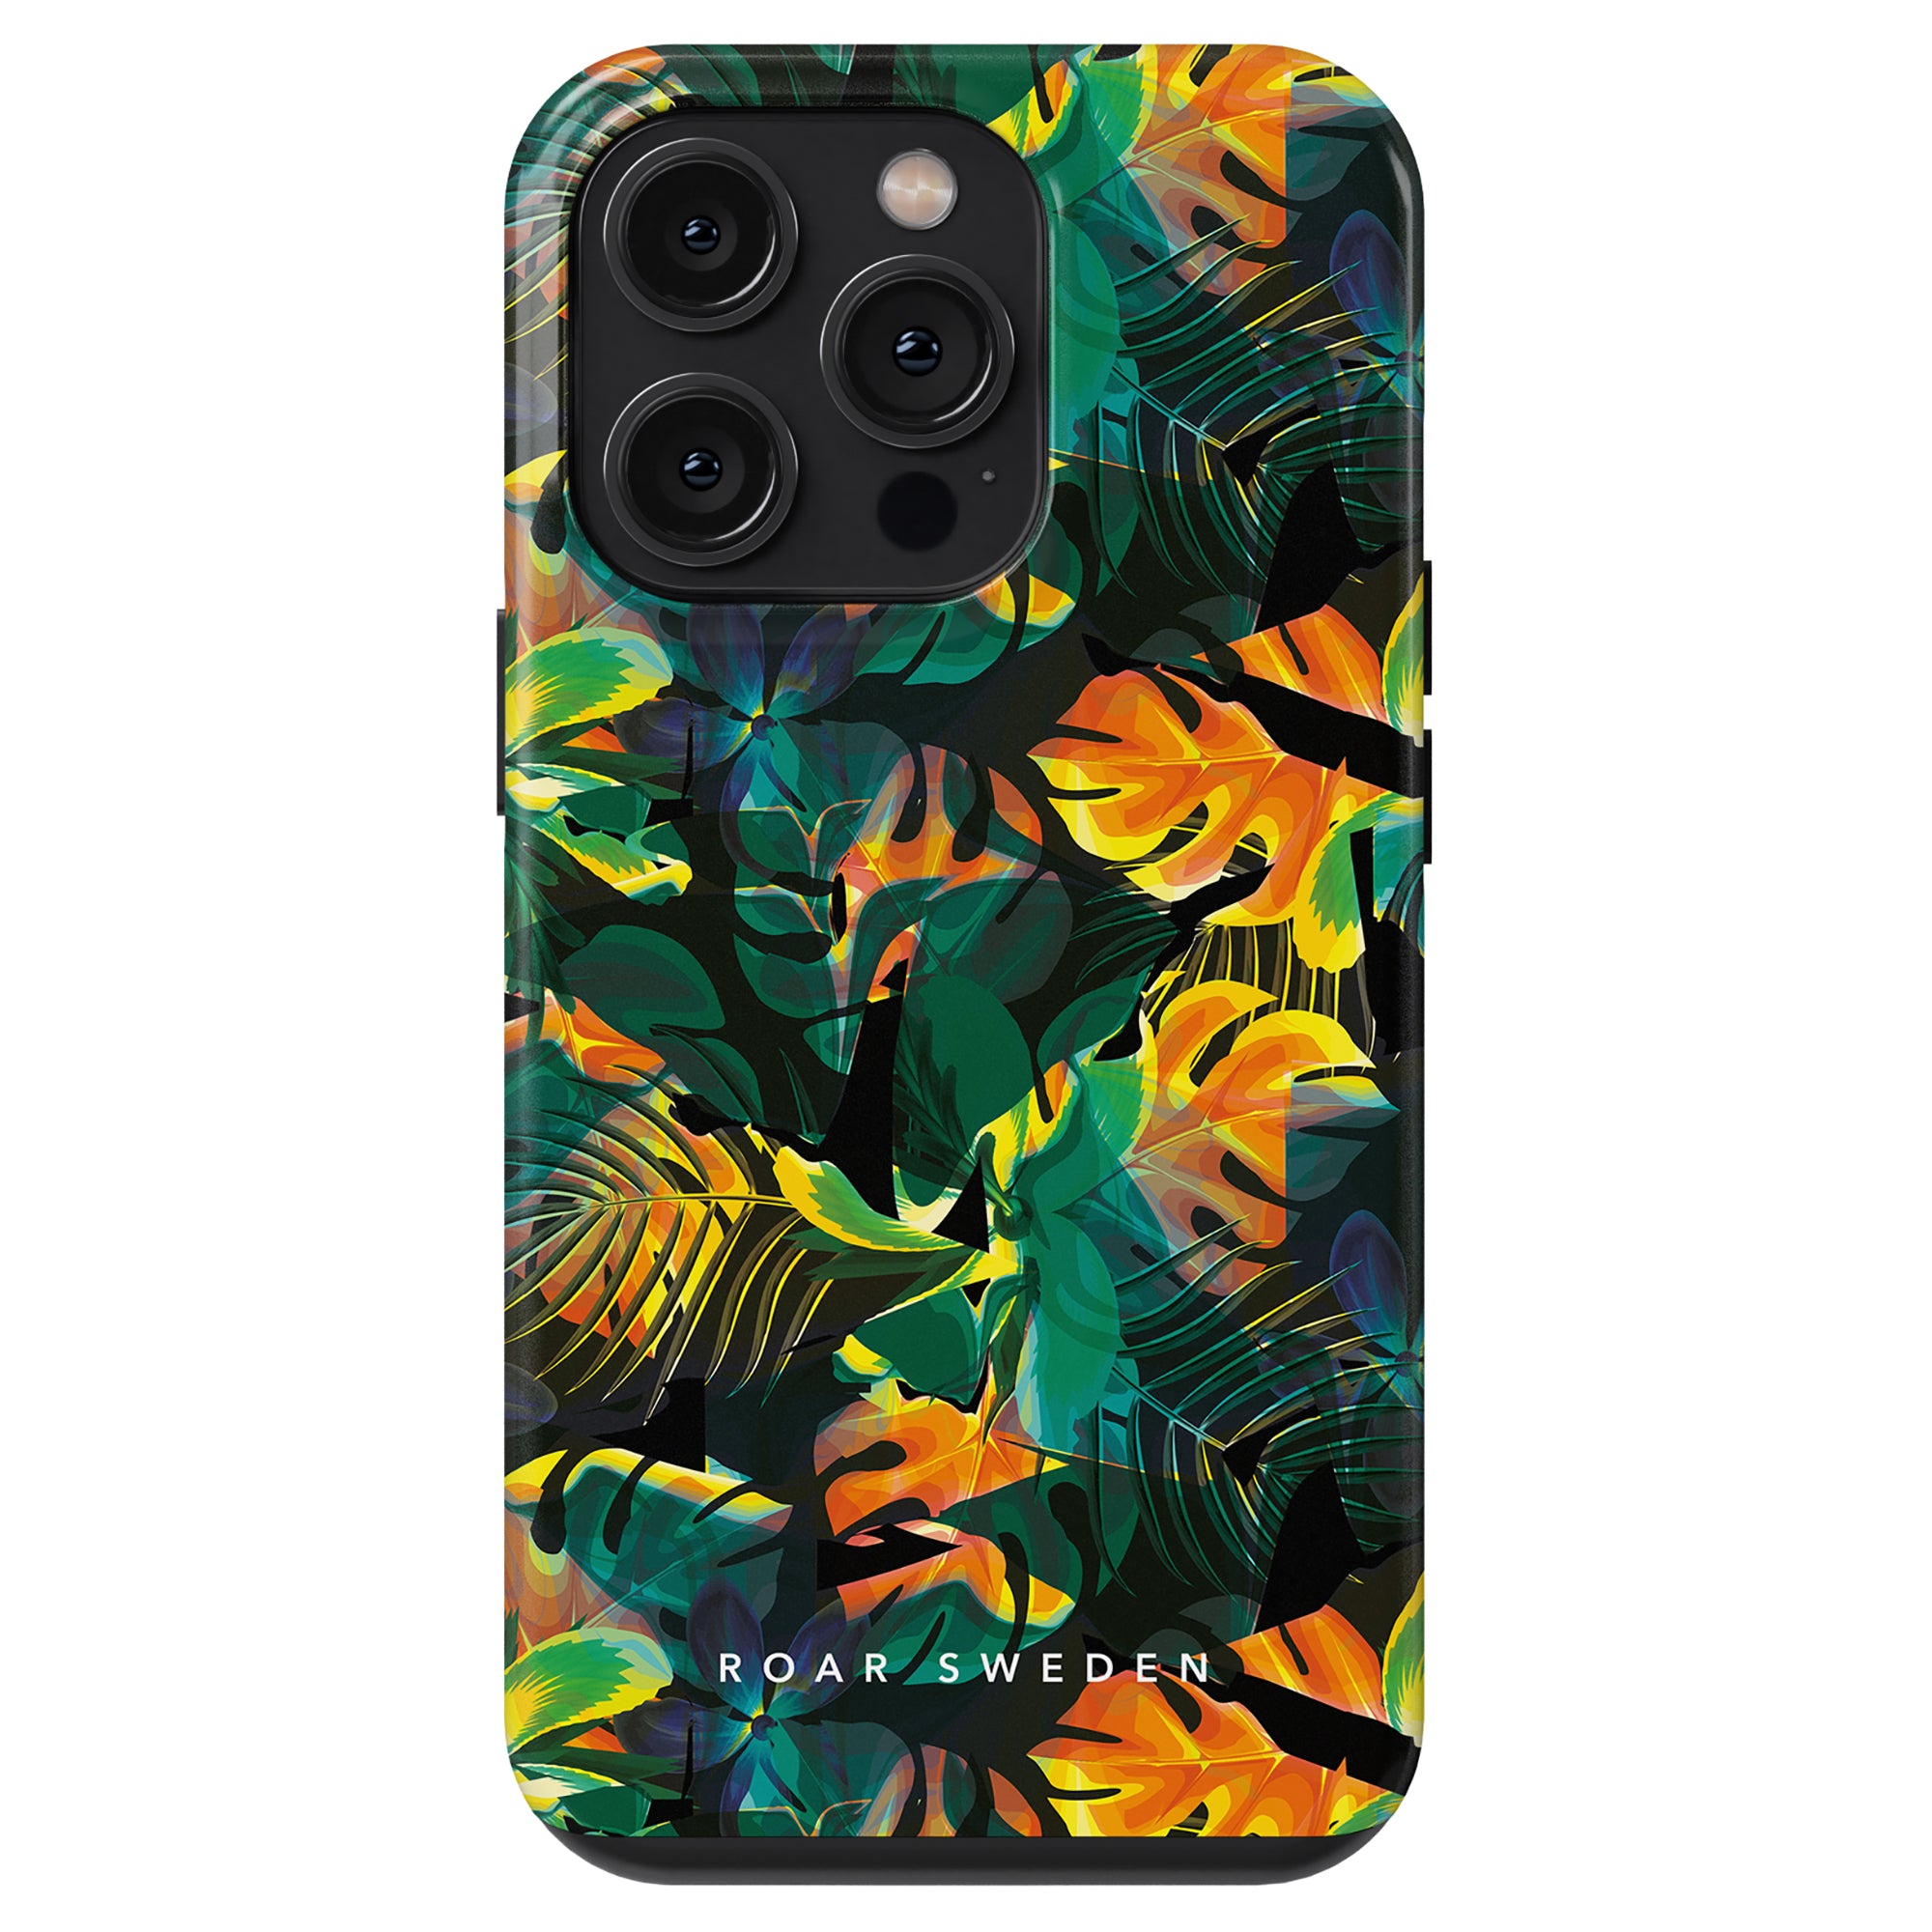 Ett färgstarkt Exotic - Tufft fodral med tropiska löv, perfekt för Samsung- och iPhone-användare som vill ha en exotisk mobilskal.